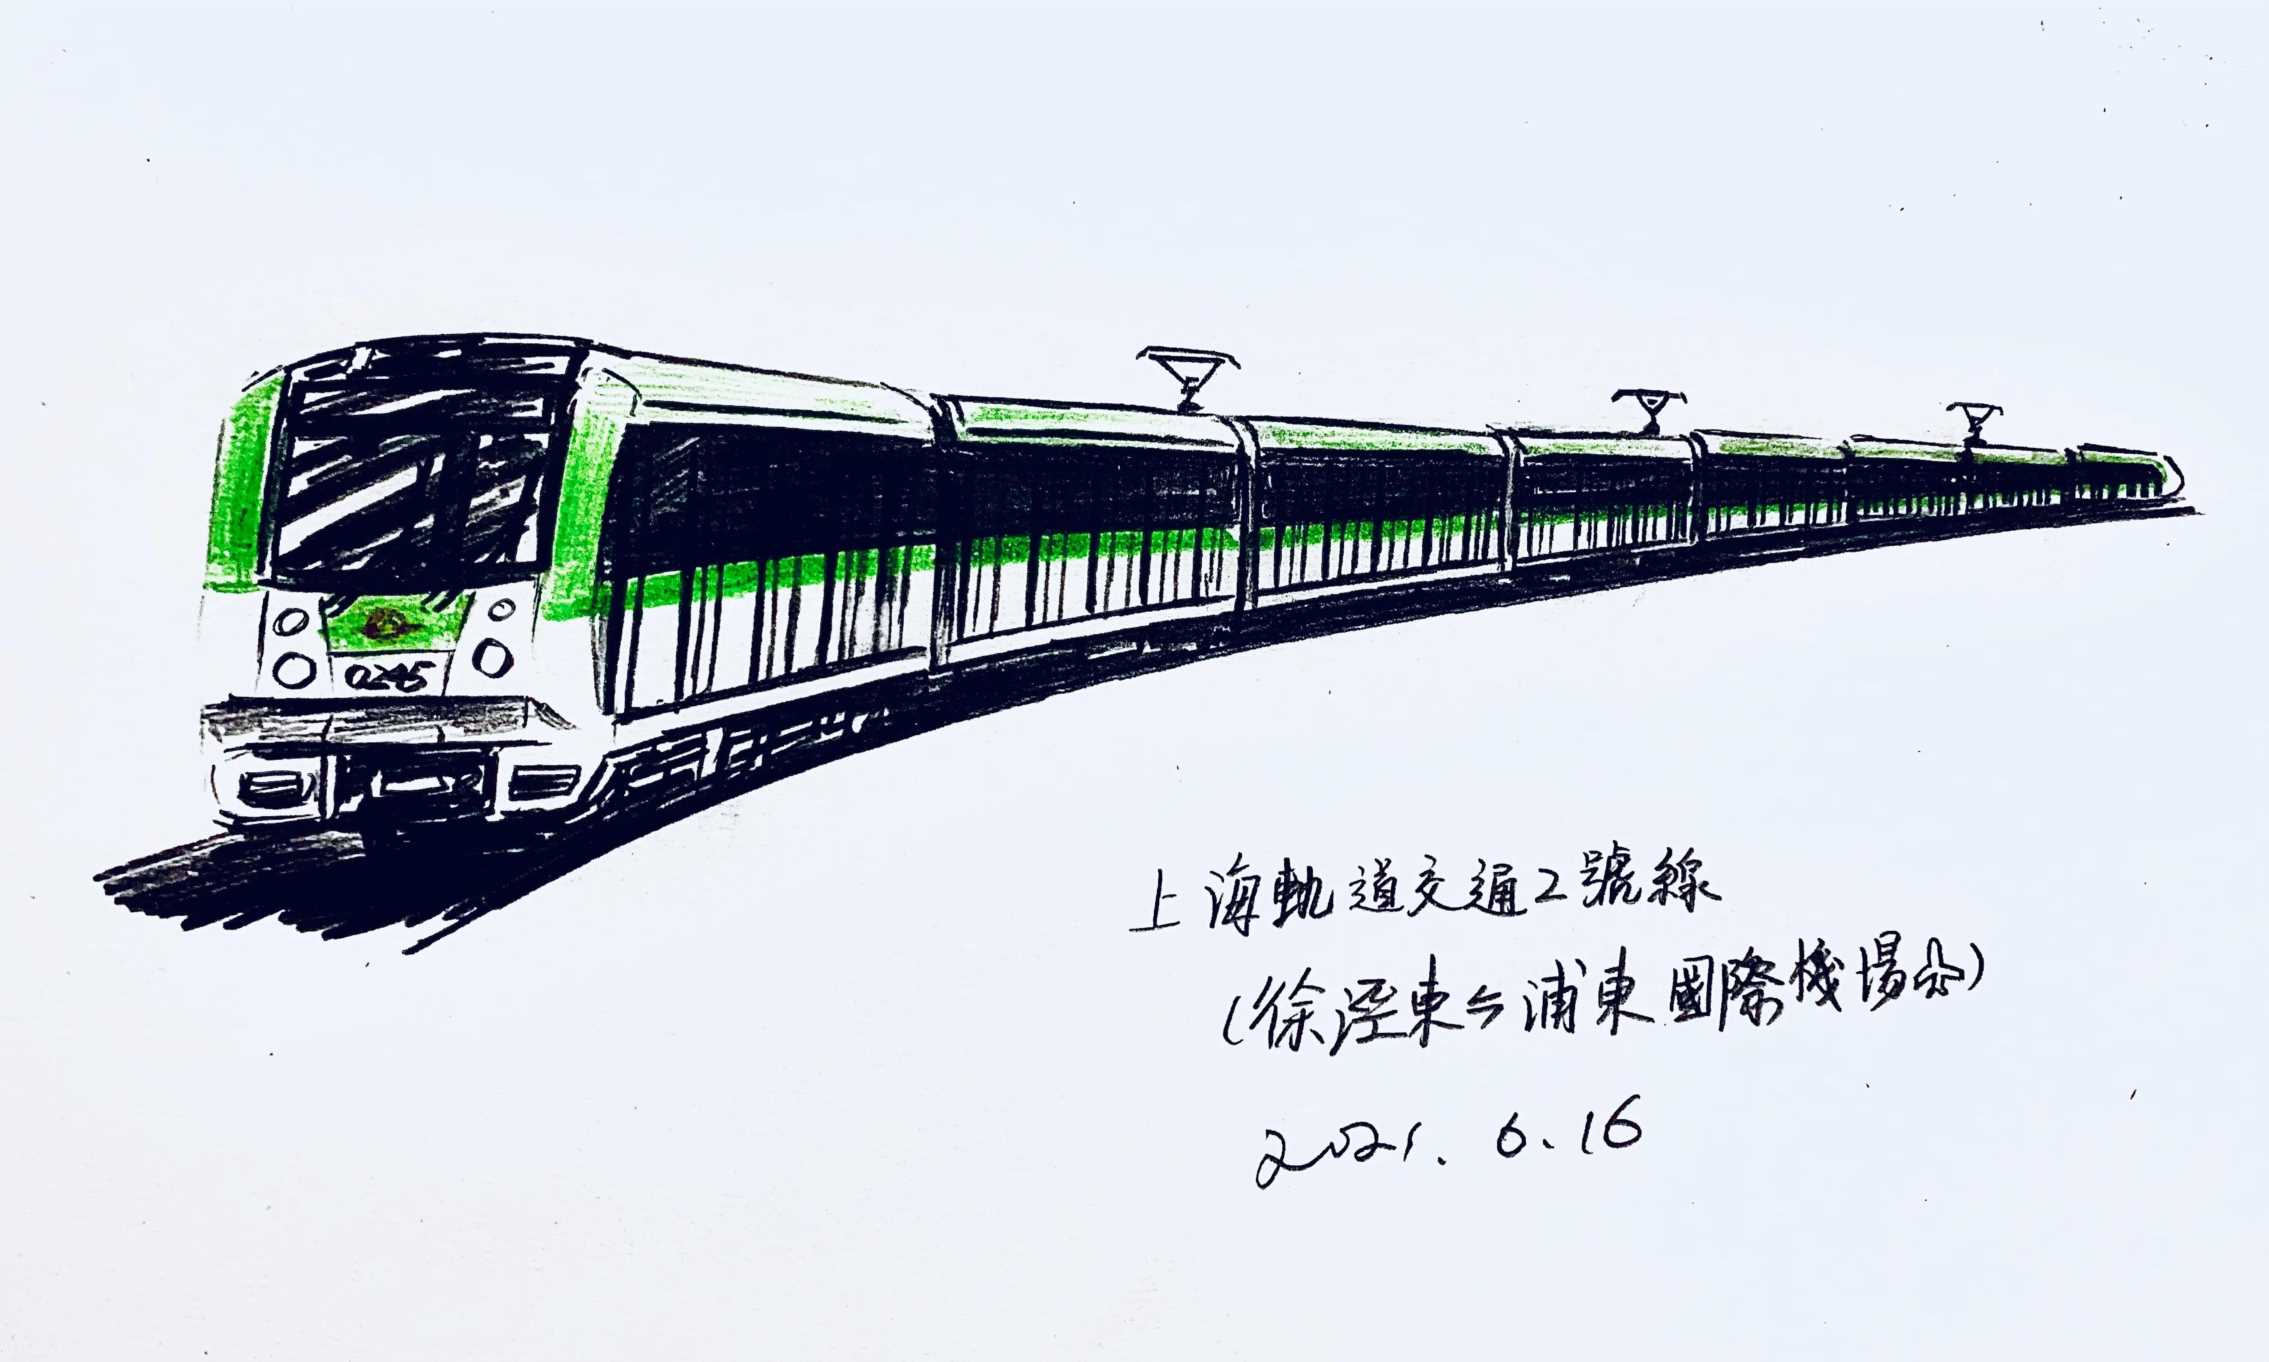 「上海轨道交通」小科普——上海轨道2号线